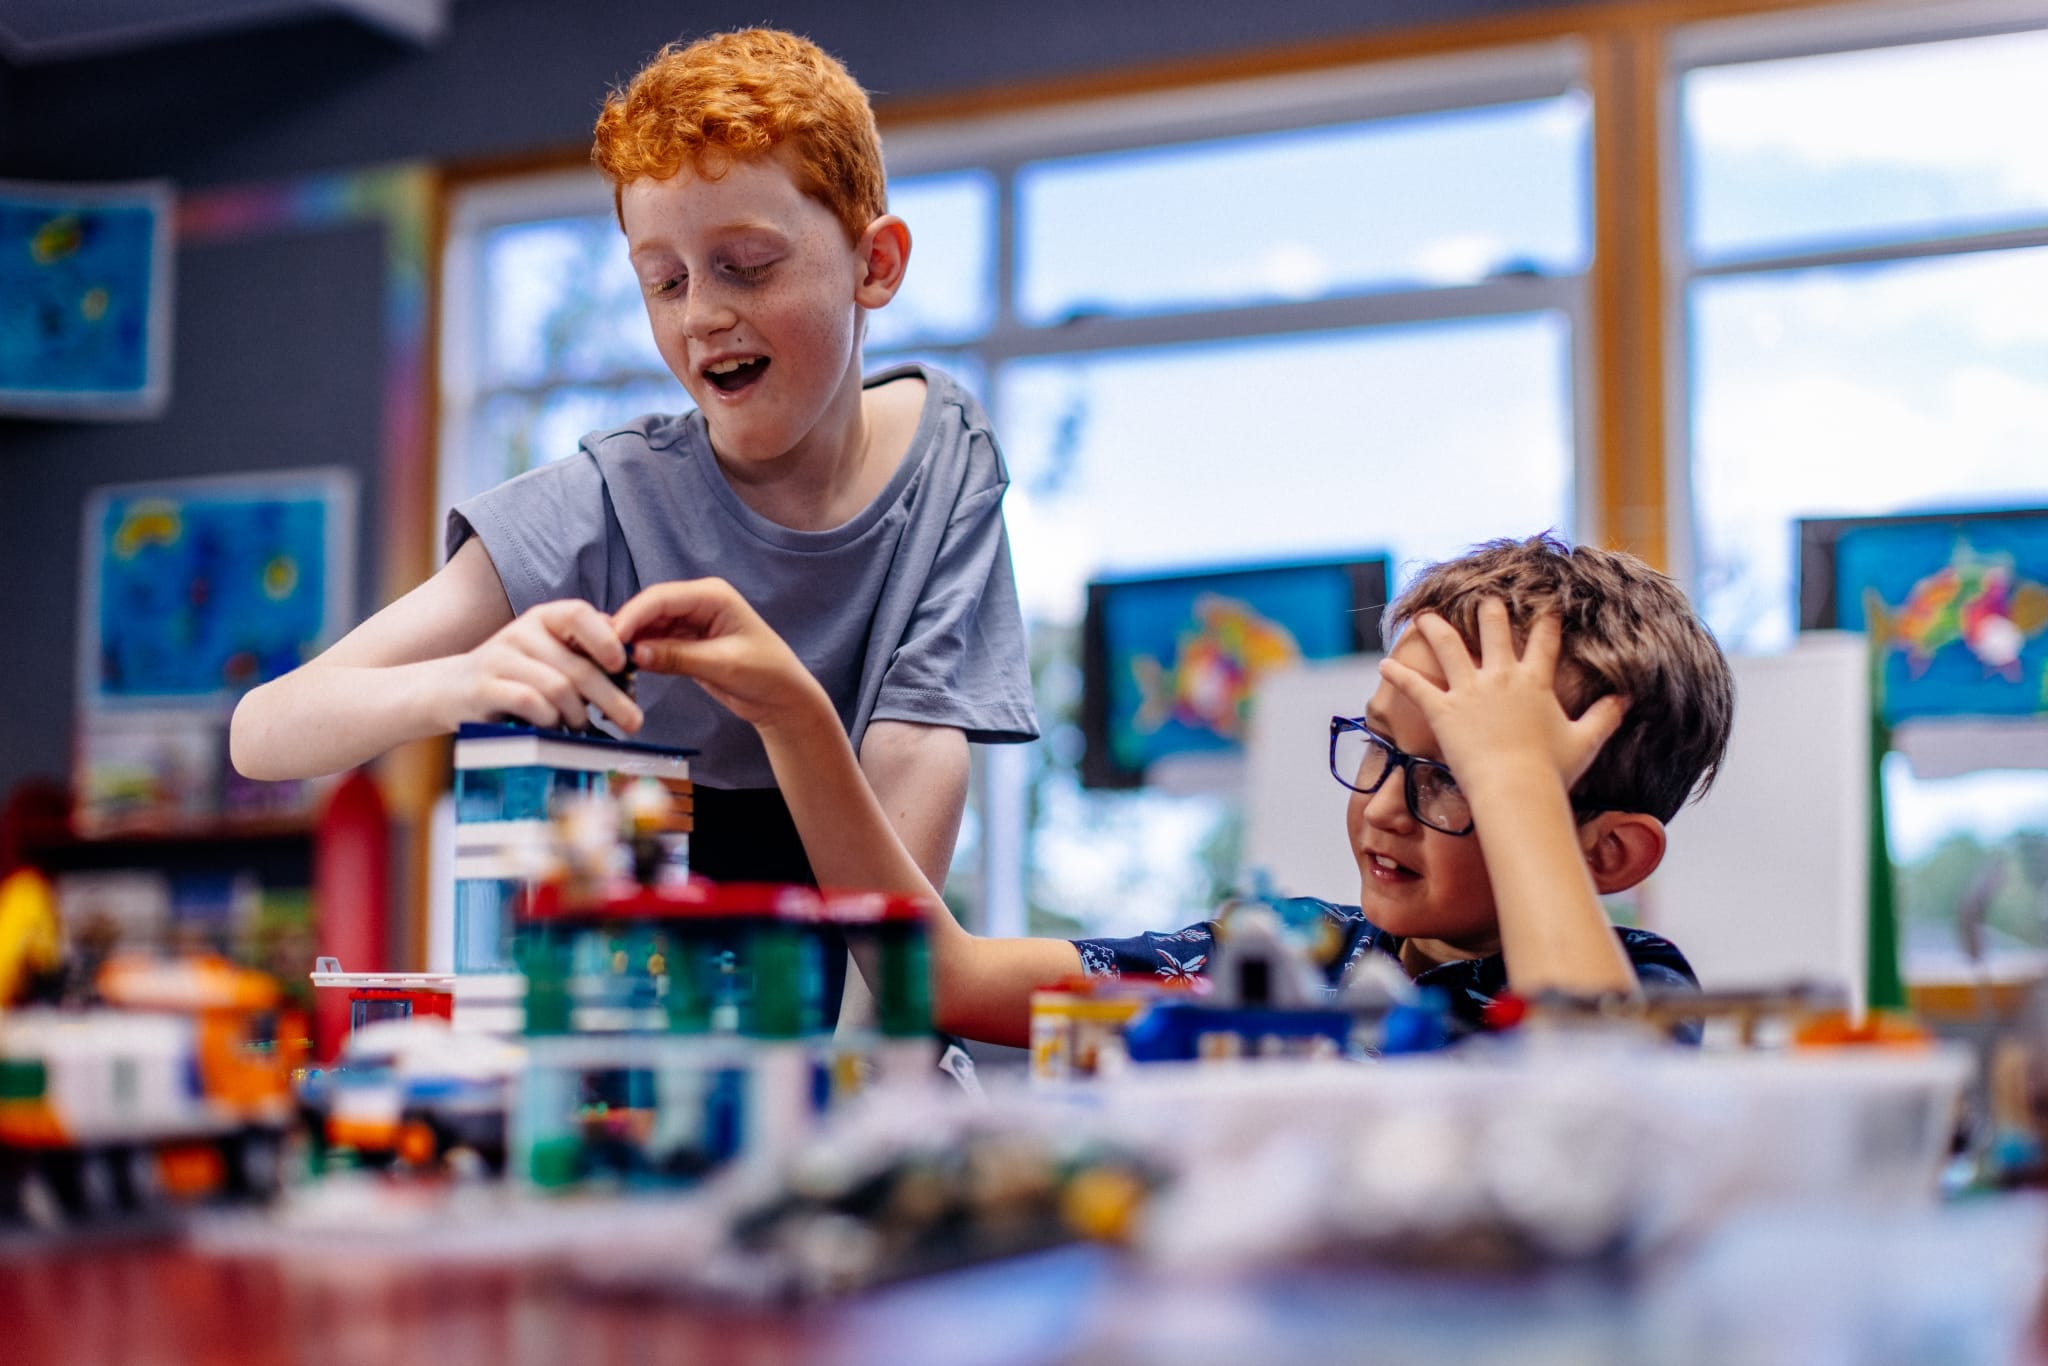 Sfera Autismo - Semplici e utili giochi con i LEGO 🧮